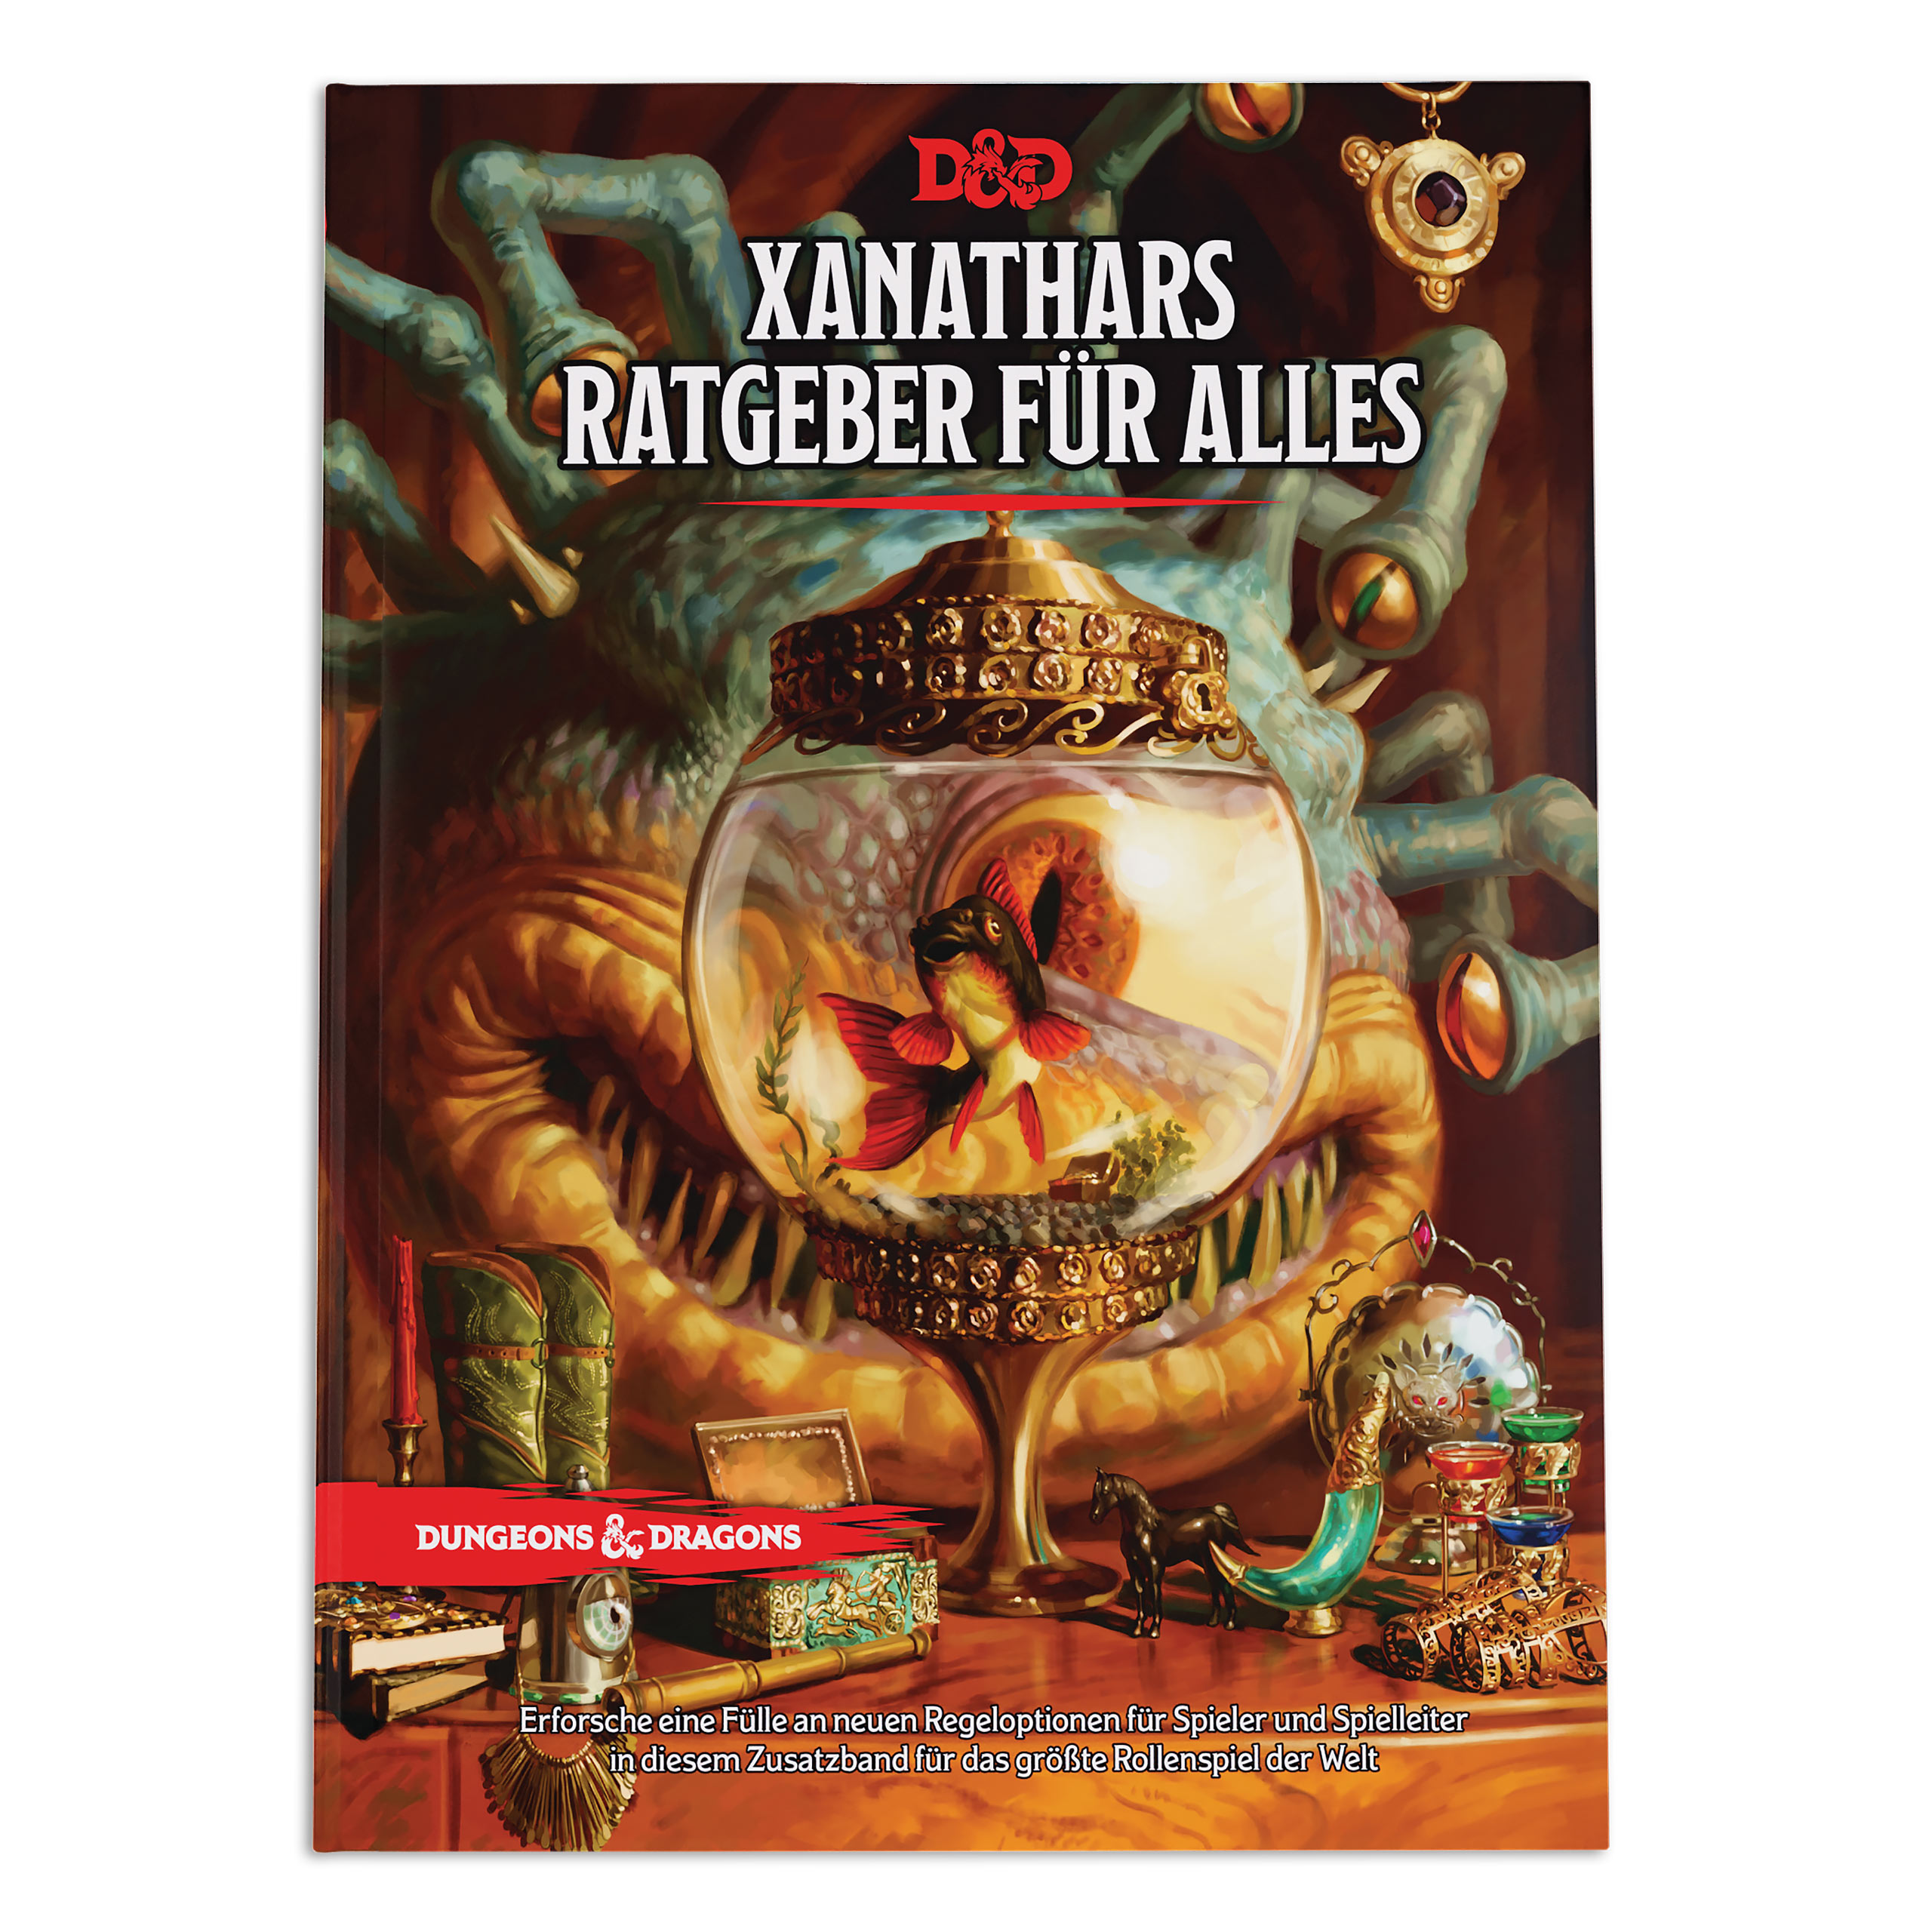 Dungeons & Dragons - Xanathar's Gids voor Alles Regelboek